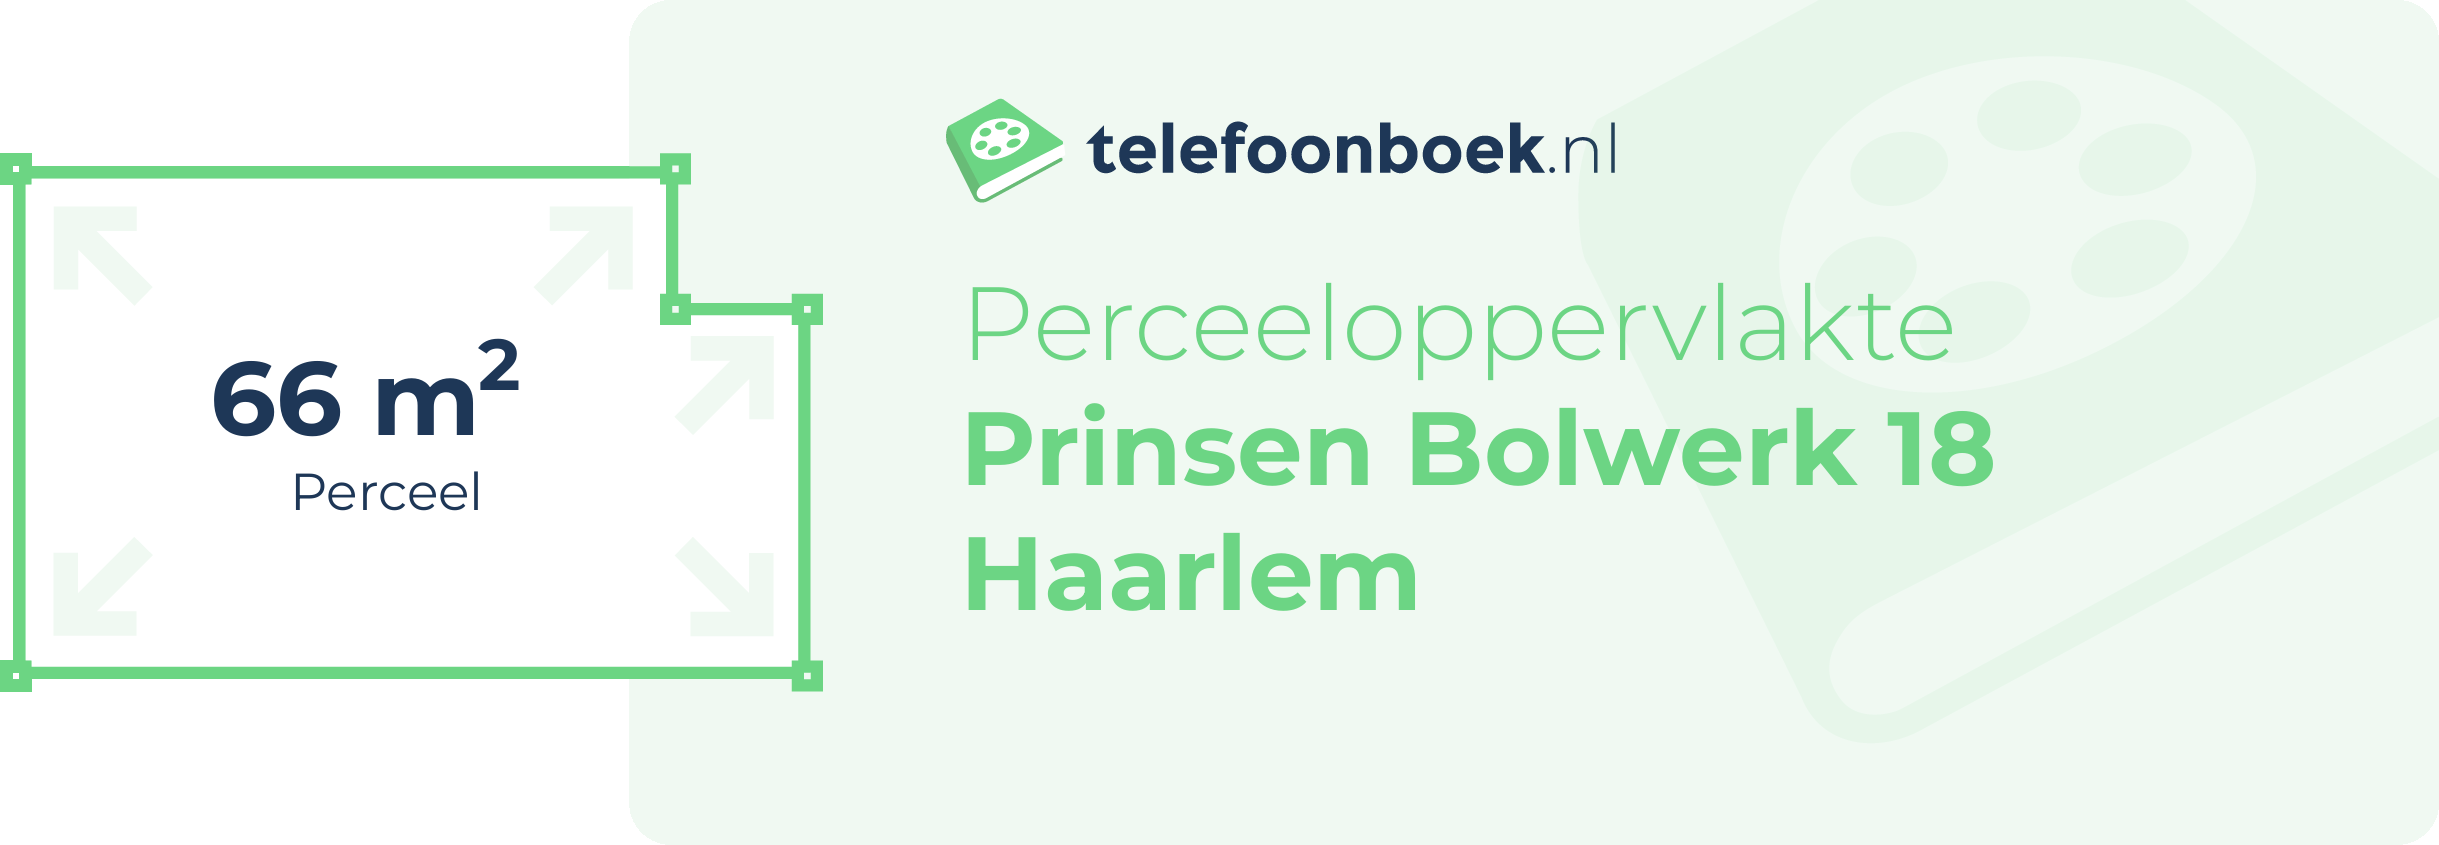 Perceeloppervlakte Prinsen Bolwerk 18 Haarlem